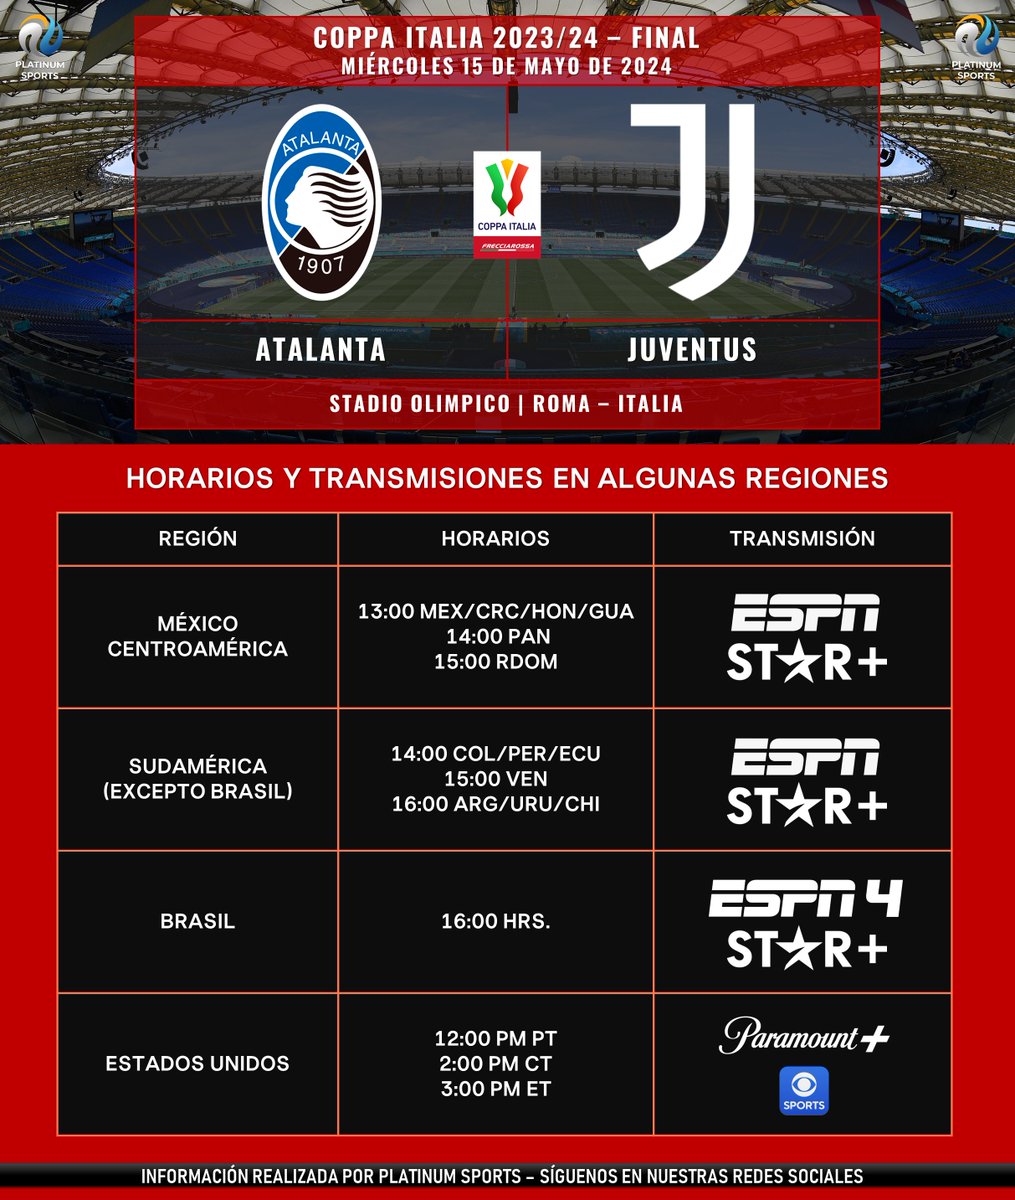 ⚽️ #AgendaPLATINUM 
🇮🇹 #CoppaItalia 2023/24 - Final
🔷 Atalanta vs. Juventus

➡️ Información para Latinoamérica y Estados Unidos.
⚠️ Sujeto a cambios. 

#CoppaItaliaFrecciaRossa